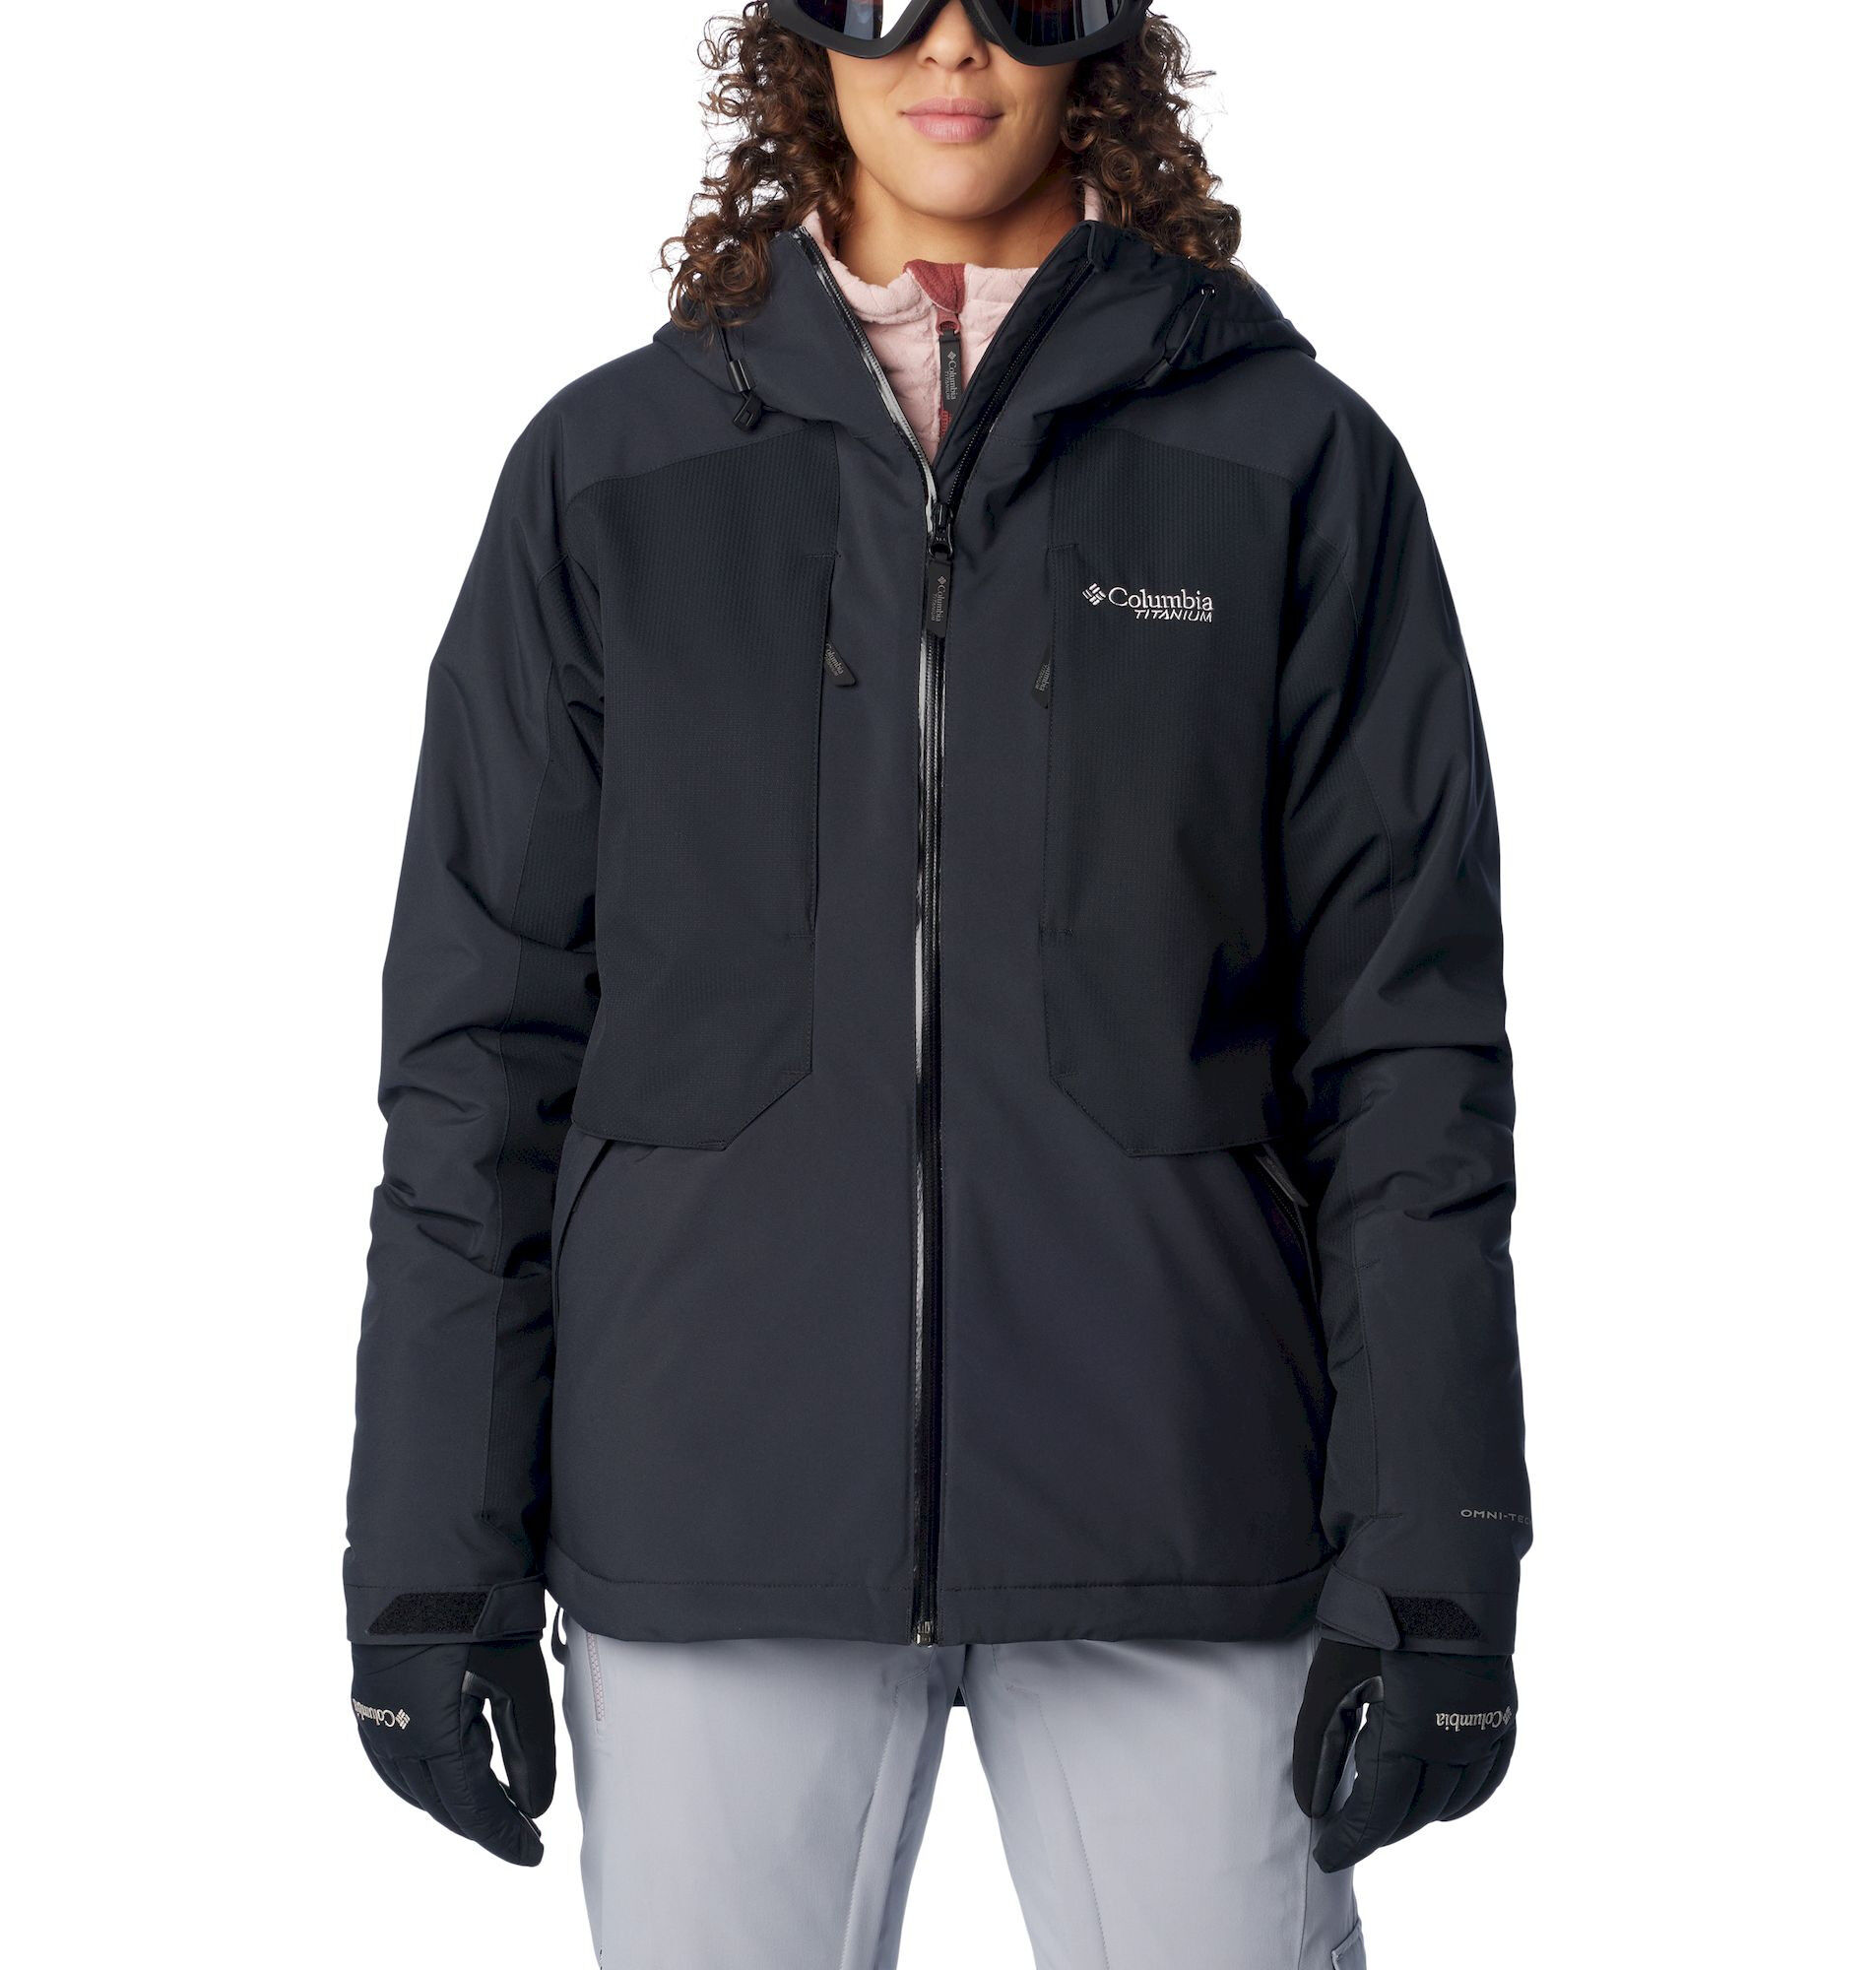 Patagonia Stormstride Jacket - Ski jacket - Women's